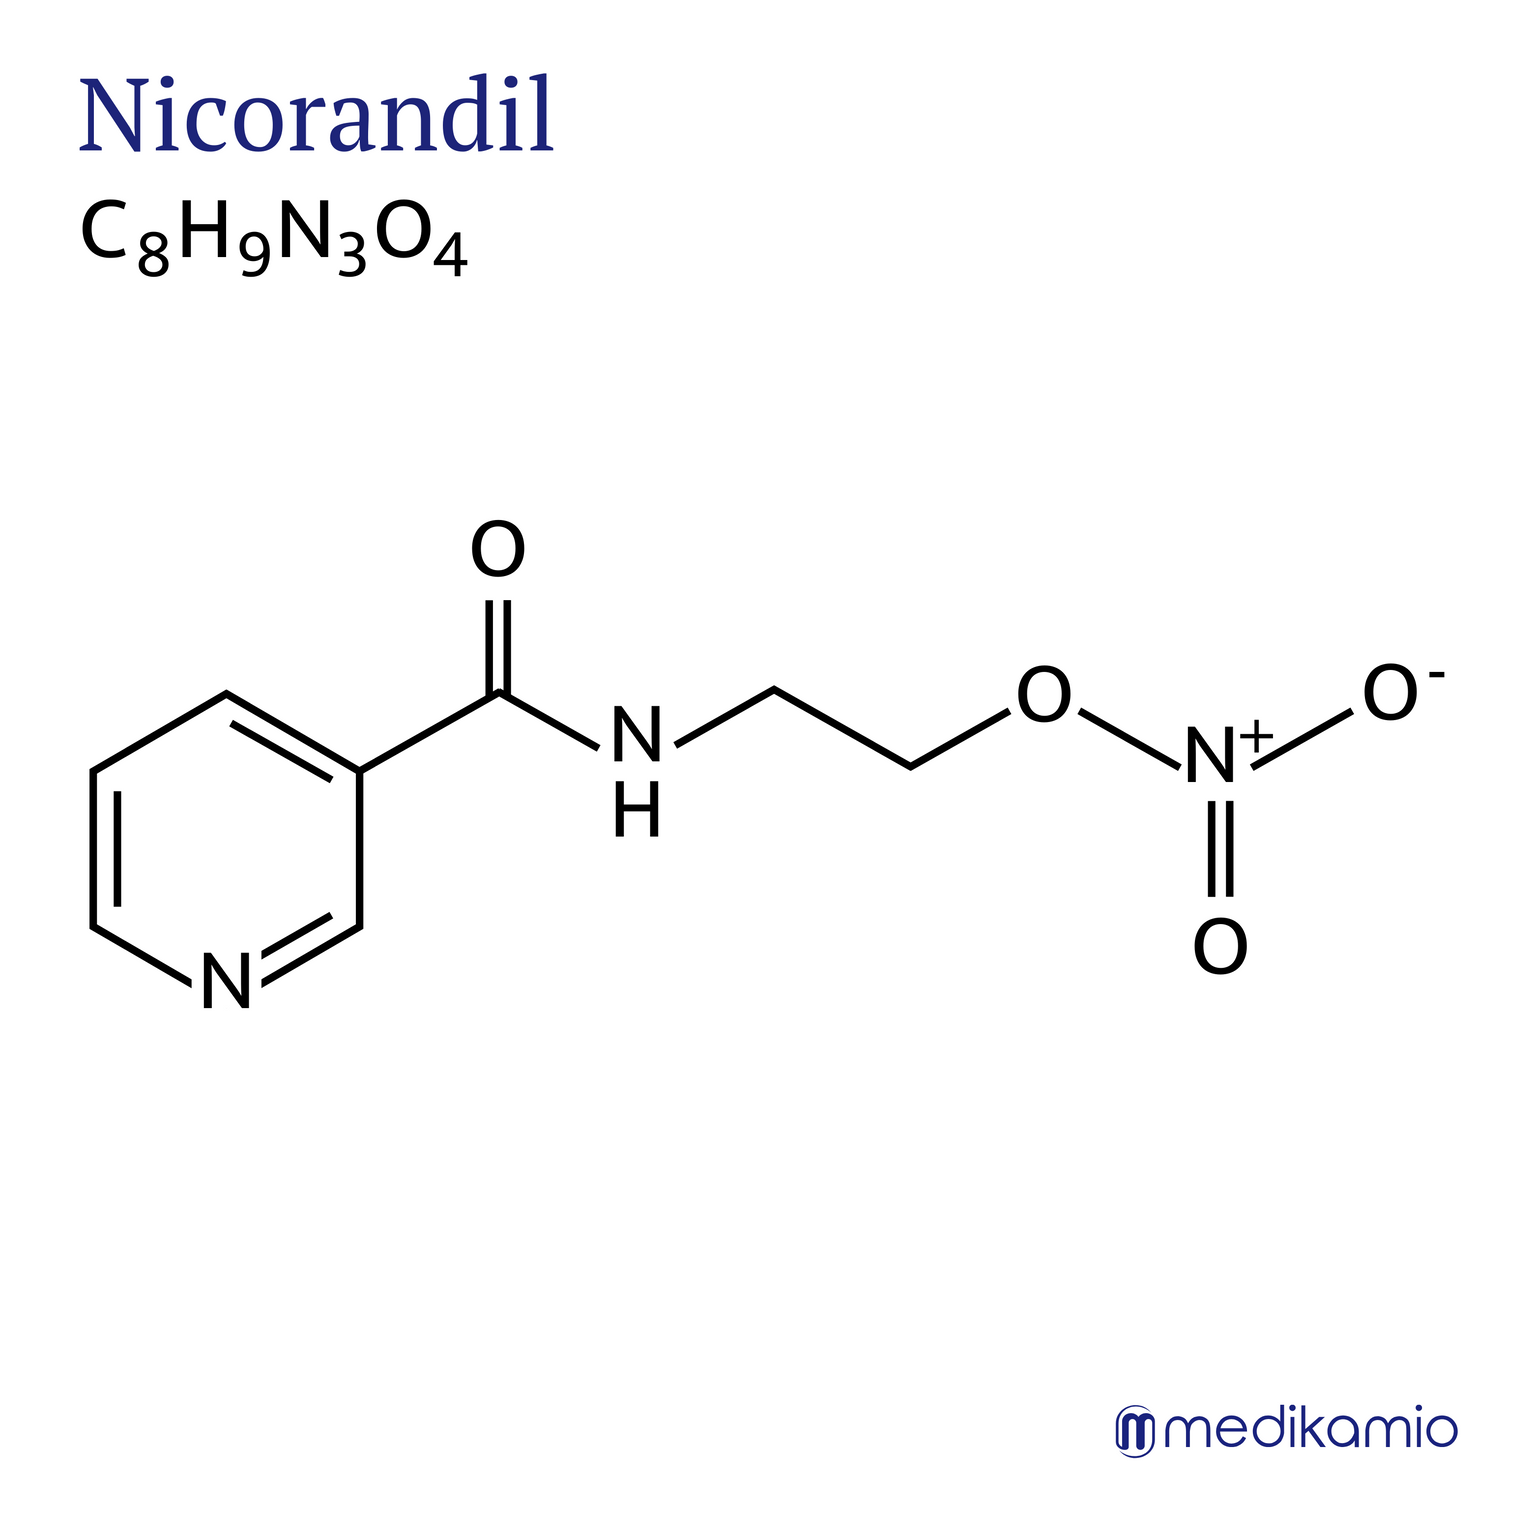 Grafische structuurformule van het werkzame bestanddeel nicorandil